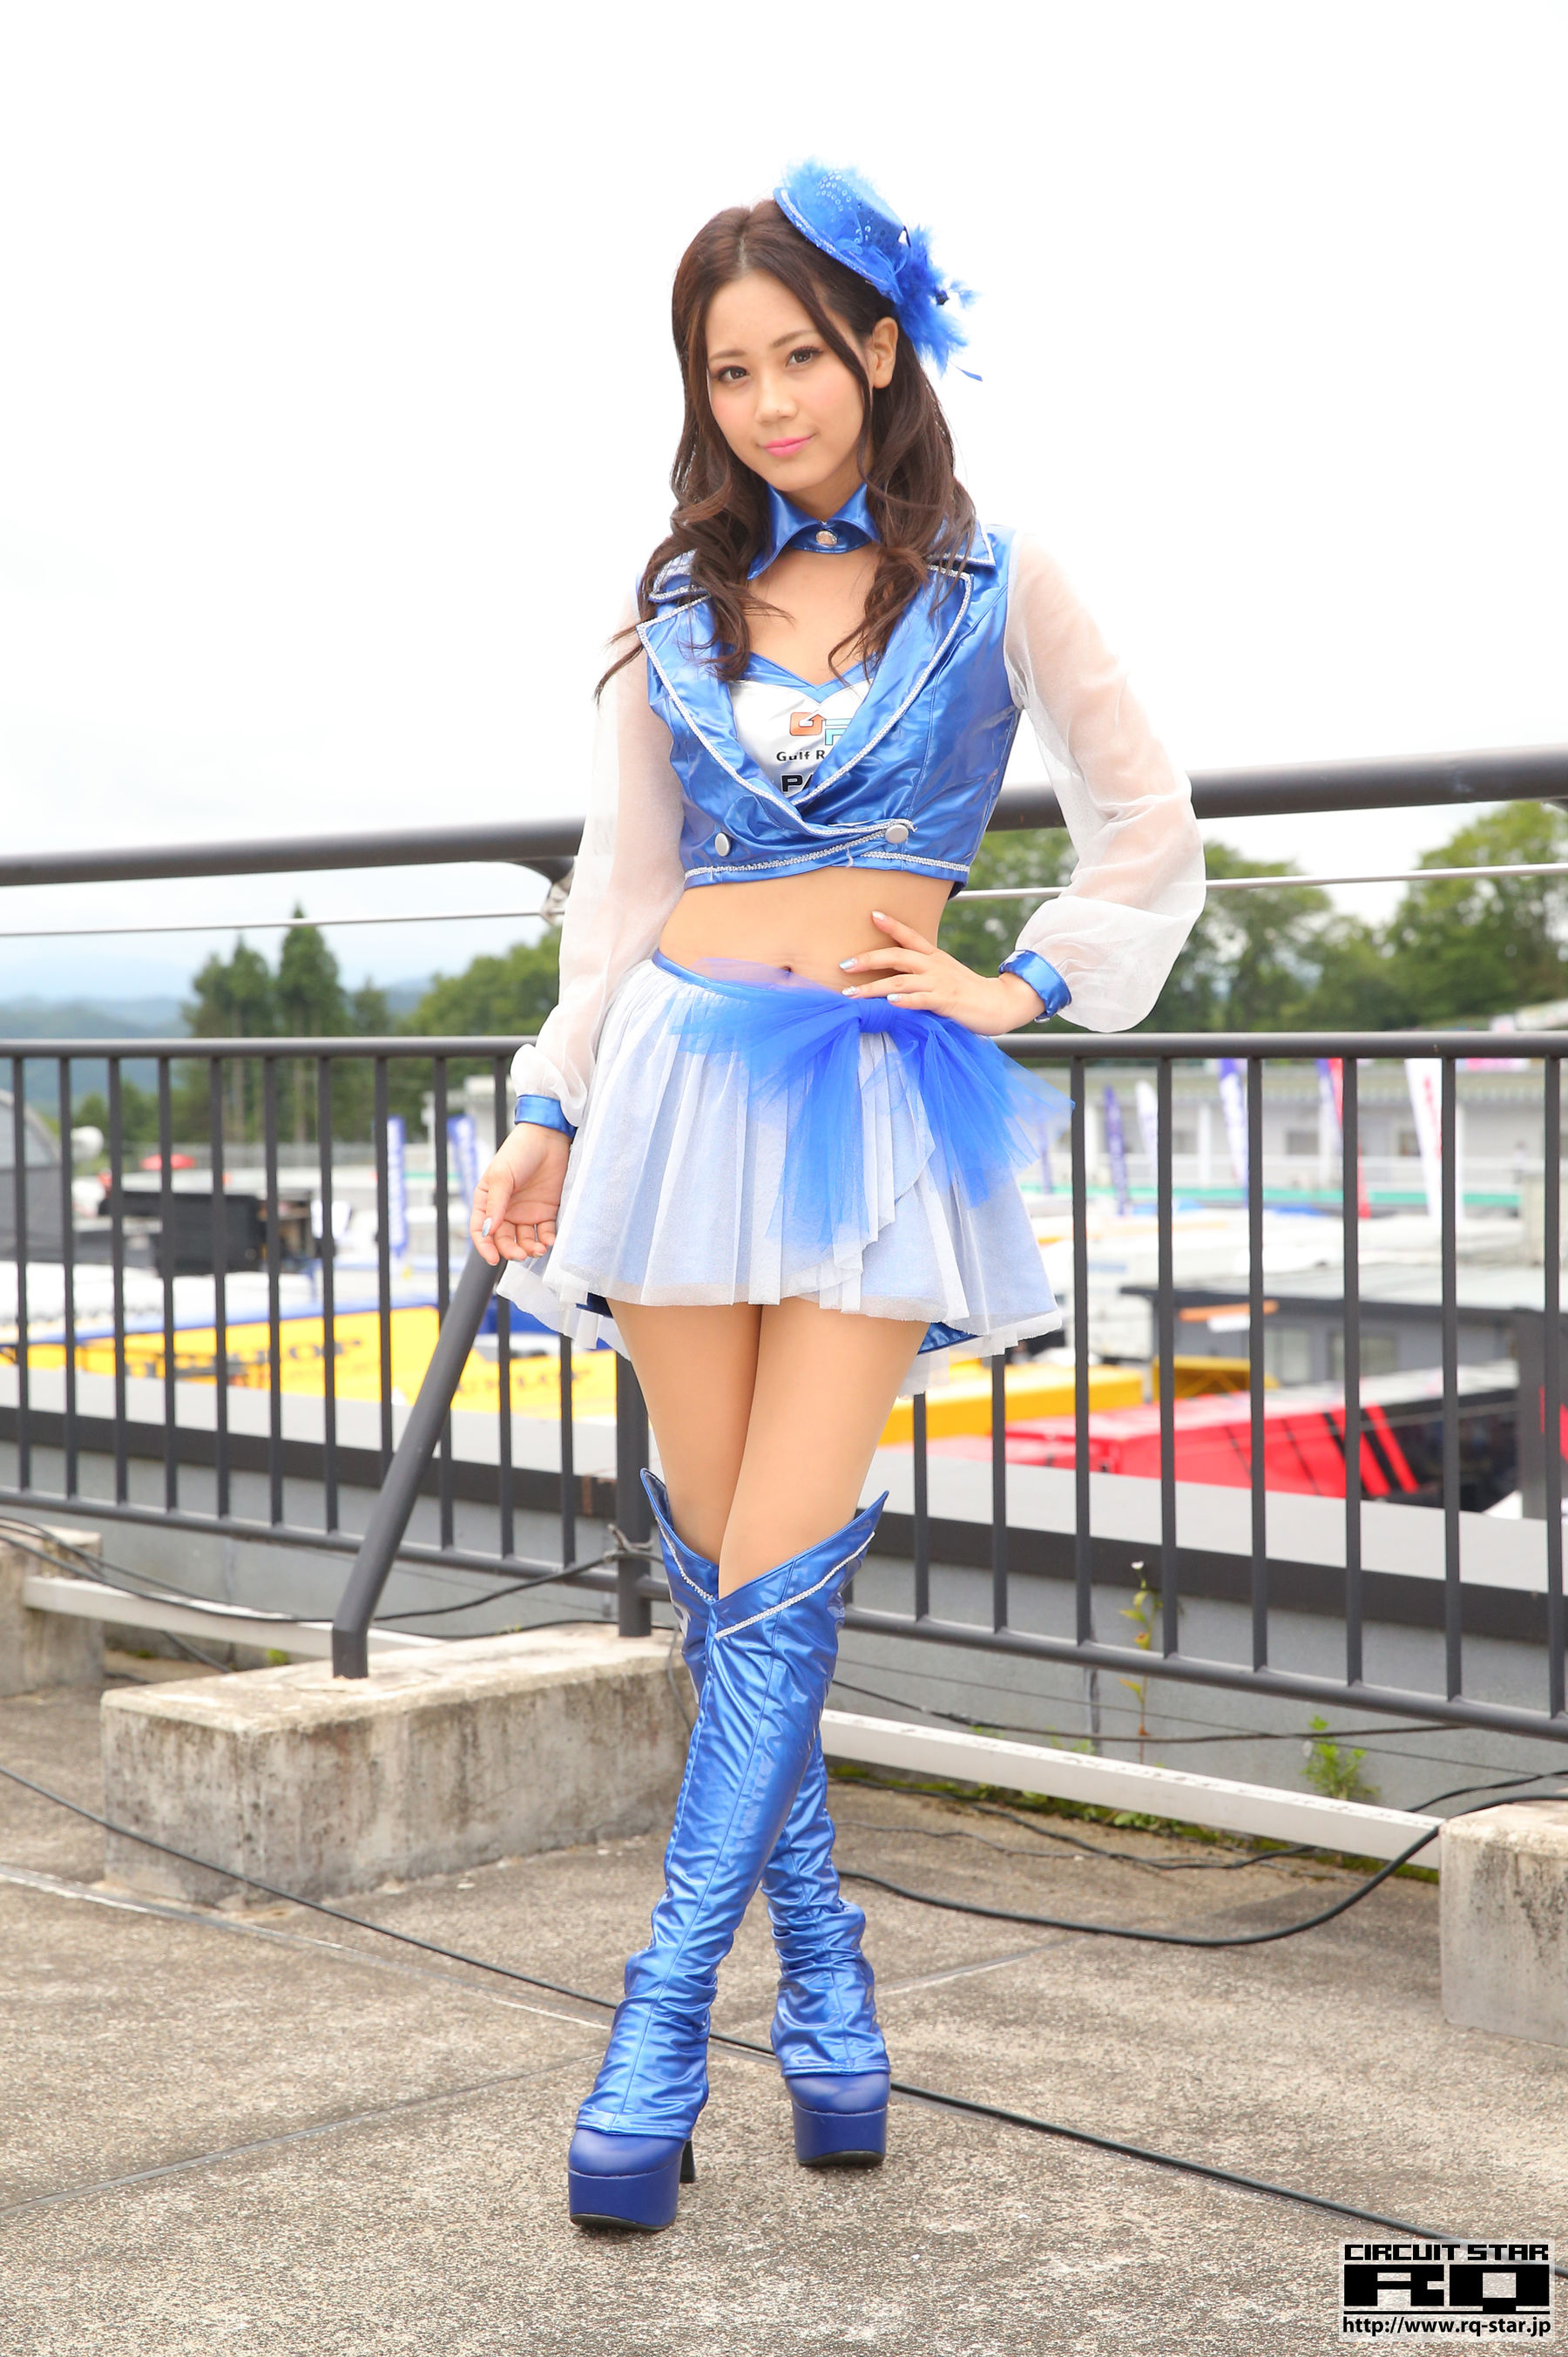 [RQ-STAR]赛车女郎:大島理沙高品质私家拍摄作品在线浏览(25P)